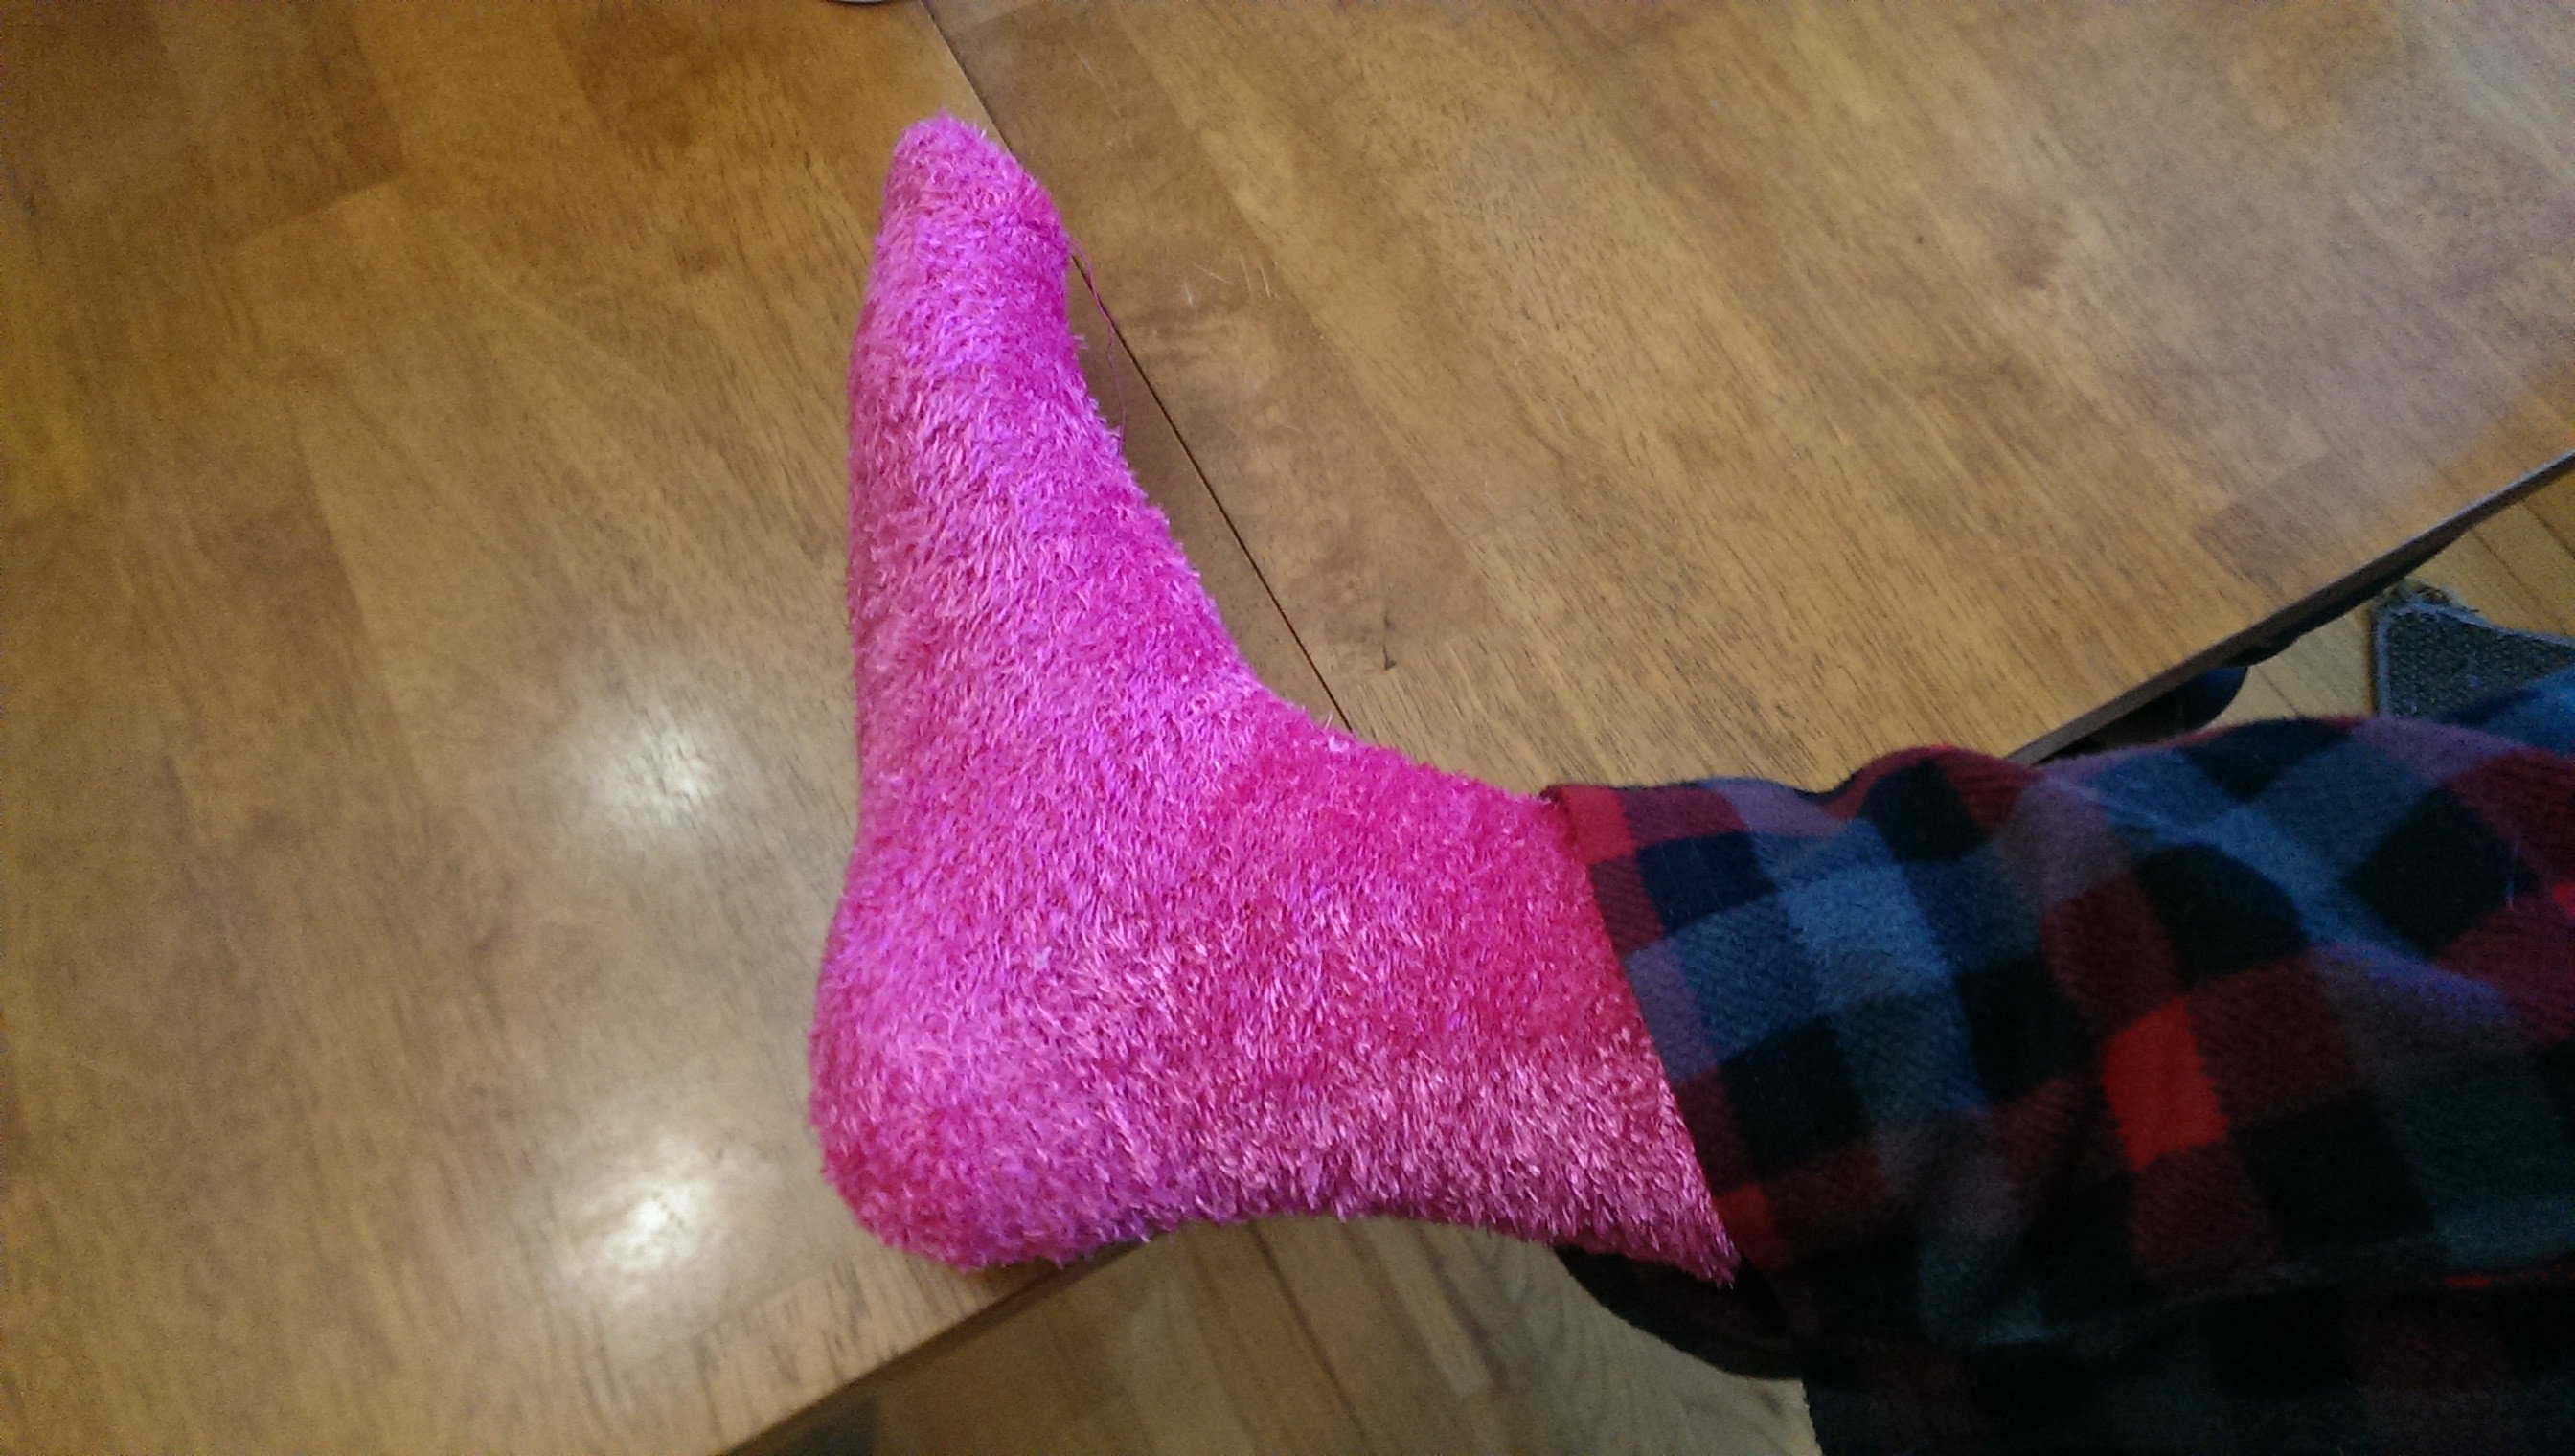 Pink fuzzy socks